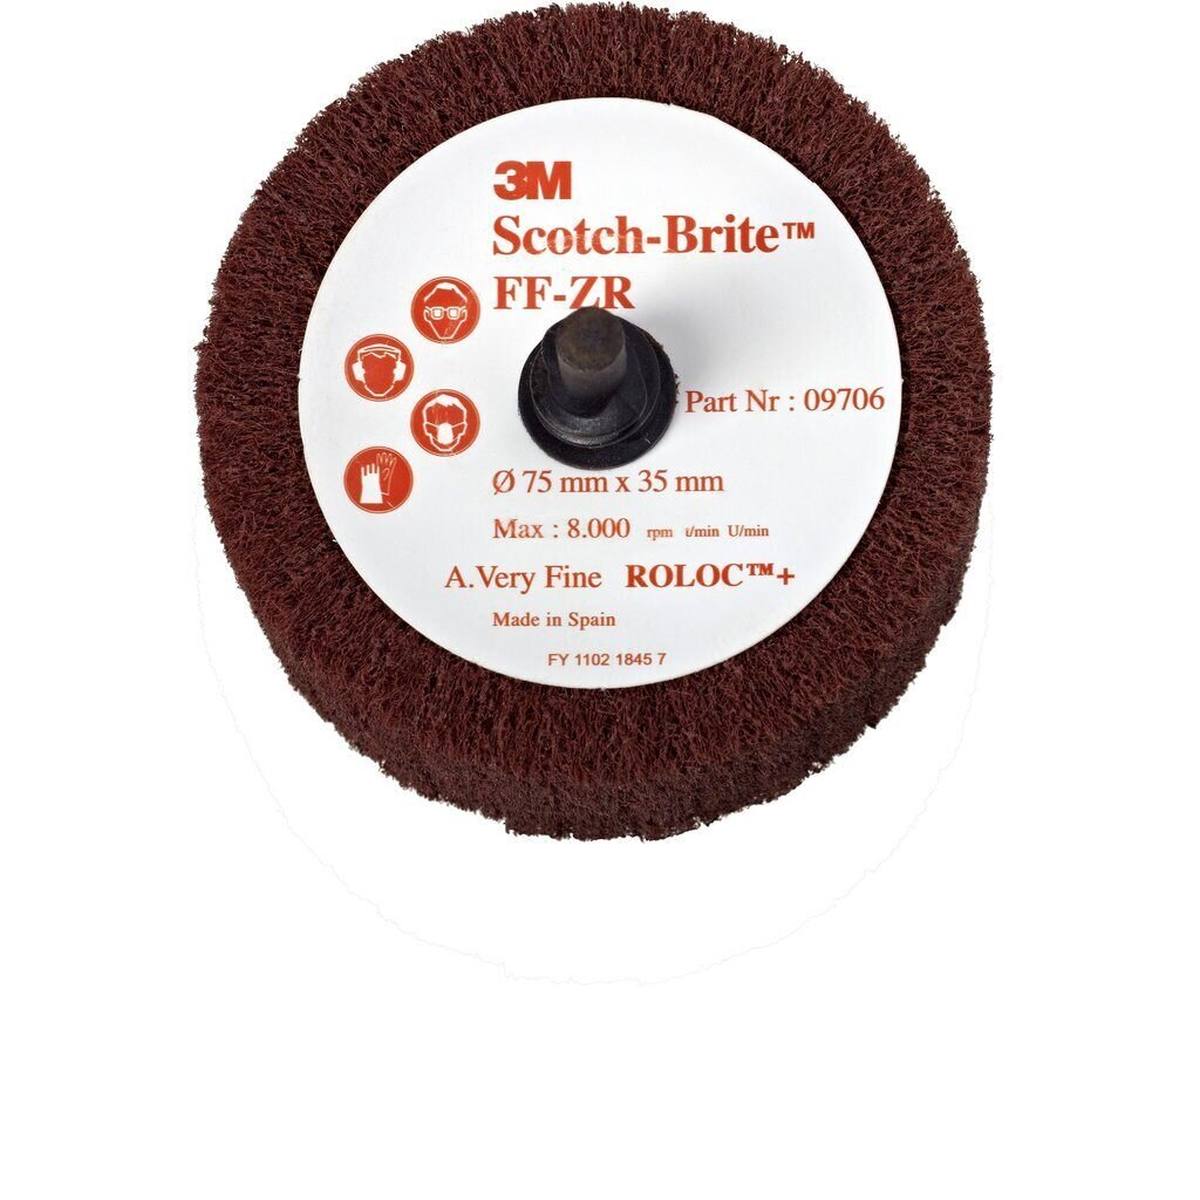 3M Scotch-Brite Roloc spazzola per lamella FF-ZR, rosso-marrone, 50,8 mm, 25 mm, A, molto fine #09704